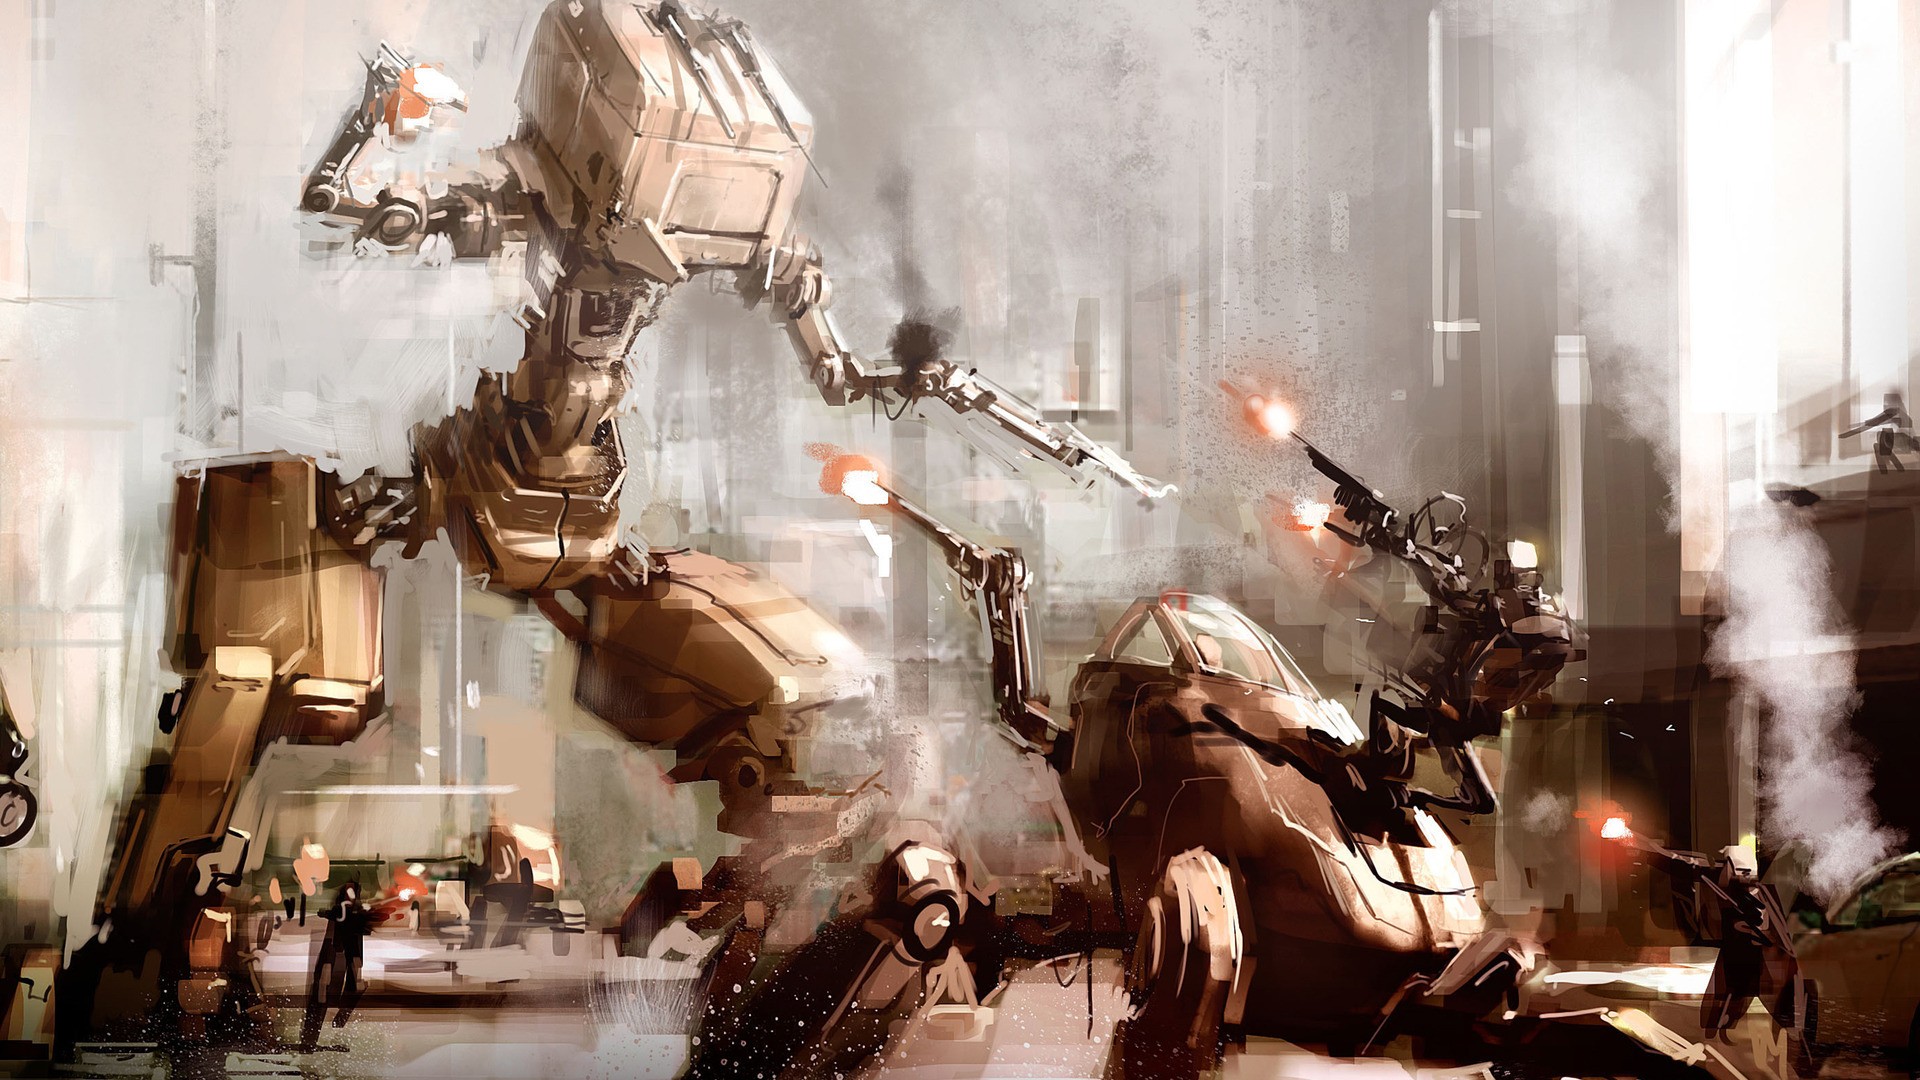 General 1920x1080 artwork fantasy art concept art robot mechs war city futuristic